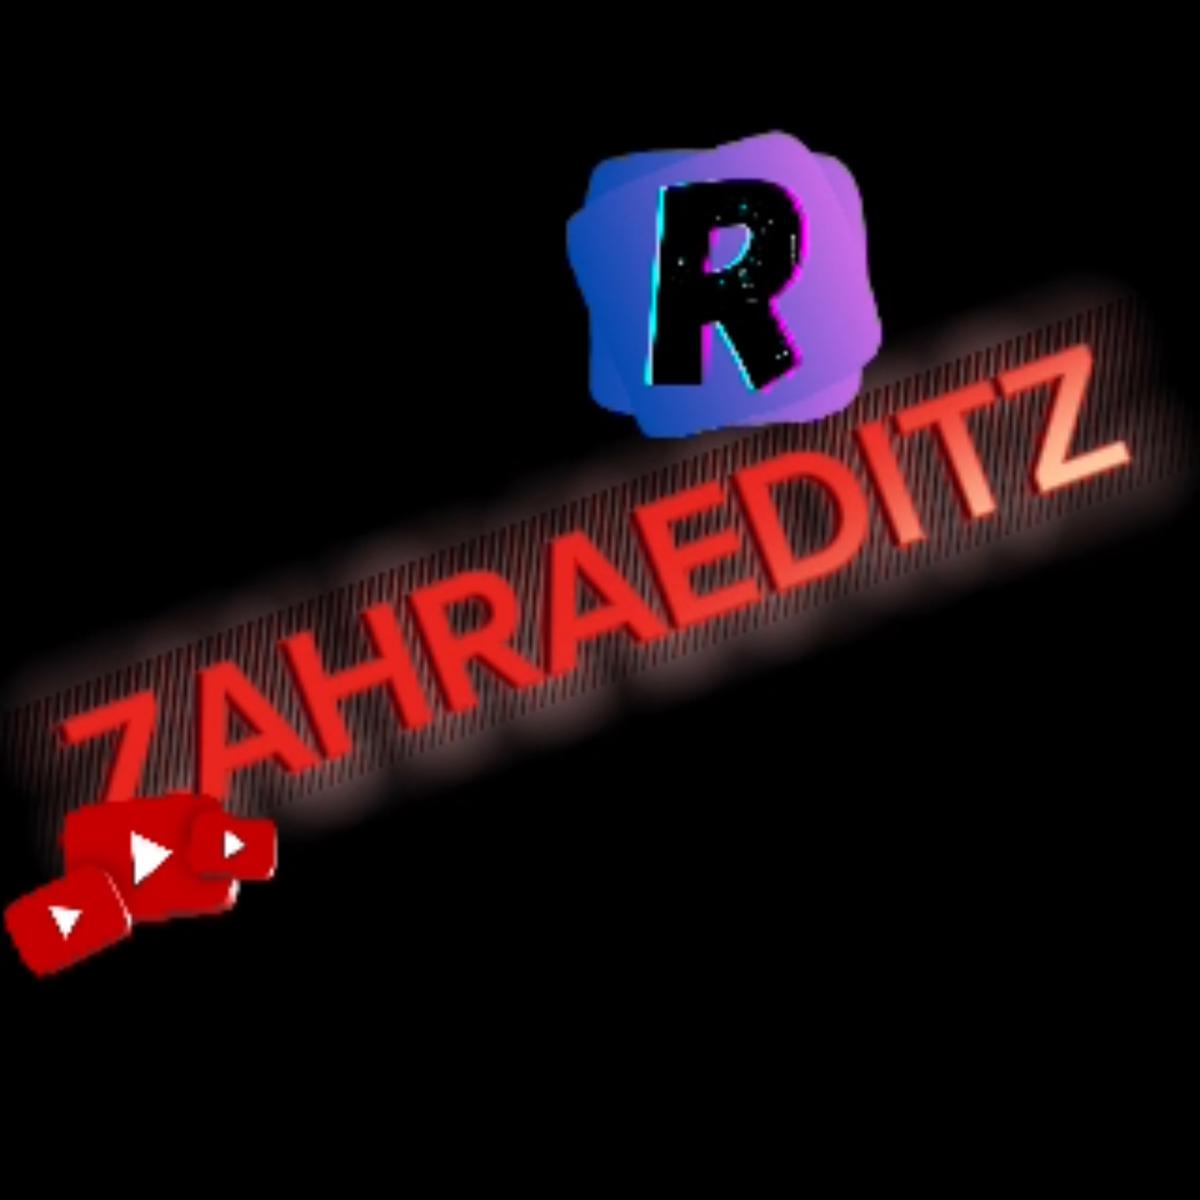 @ZAHRAEDITZ